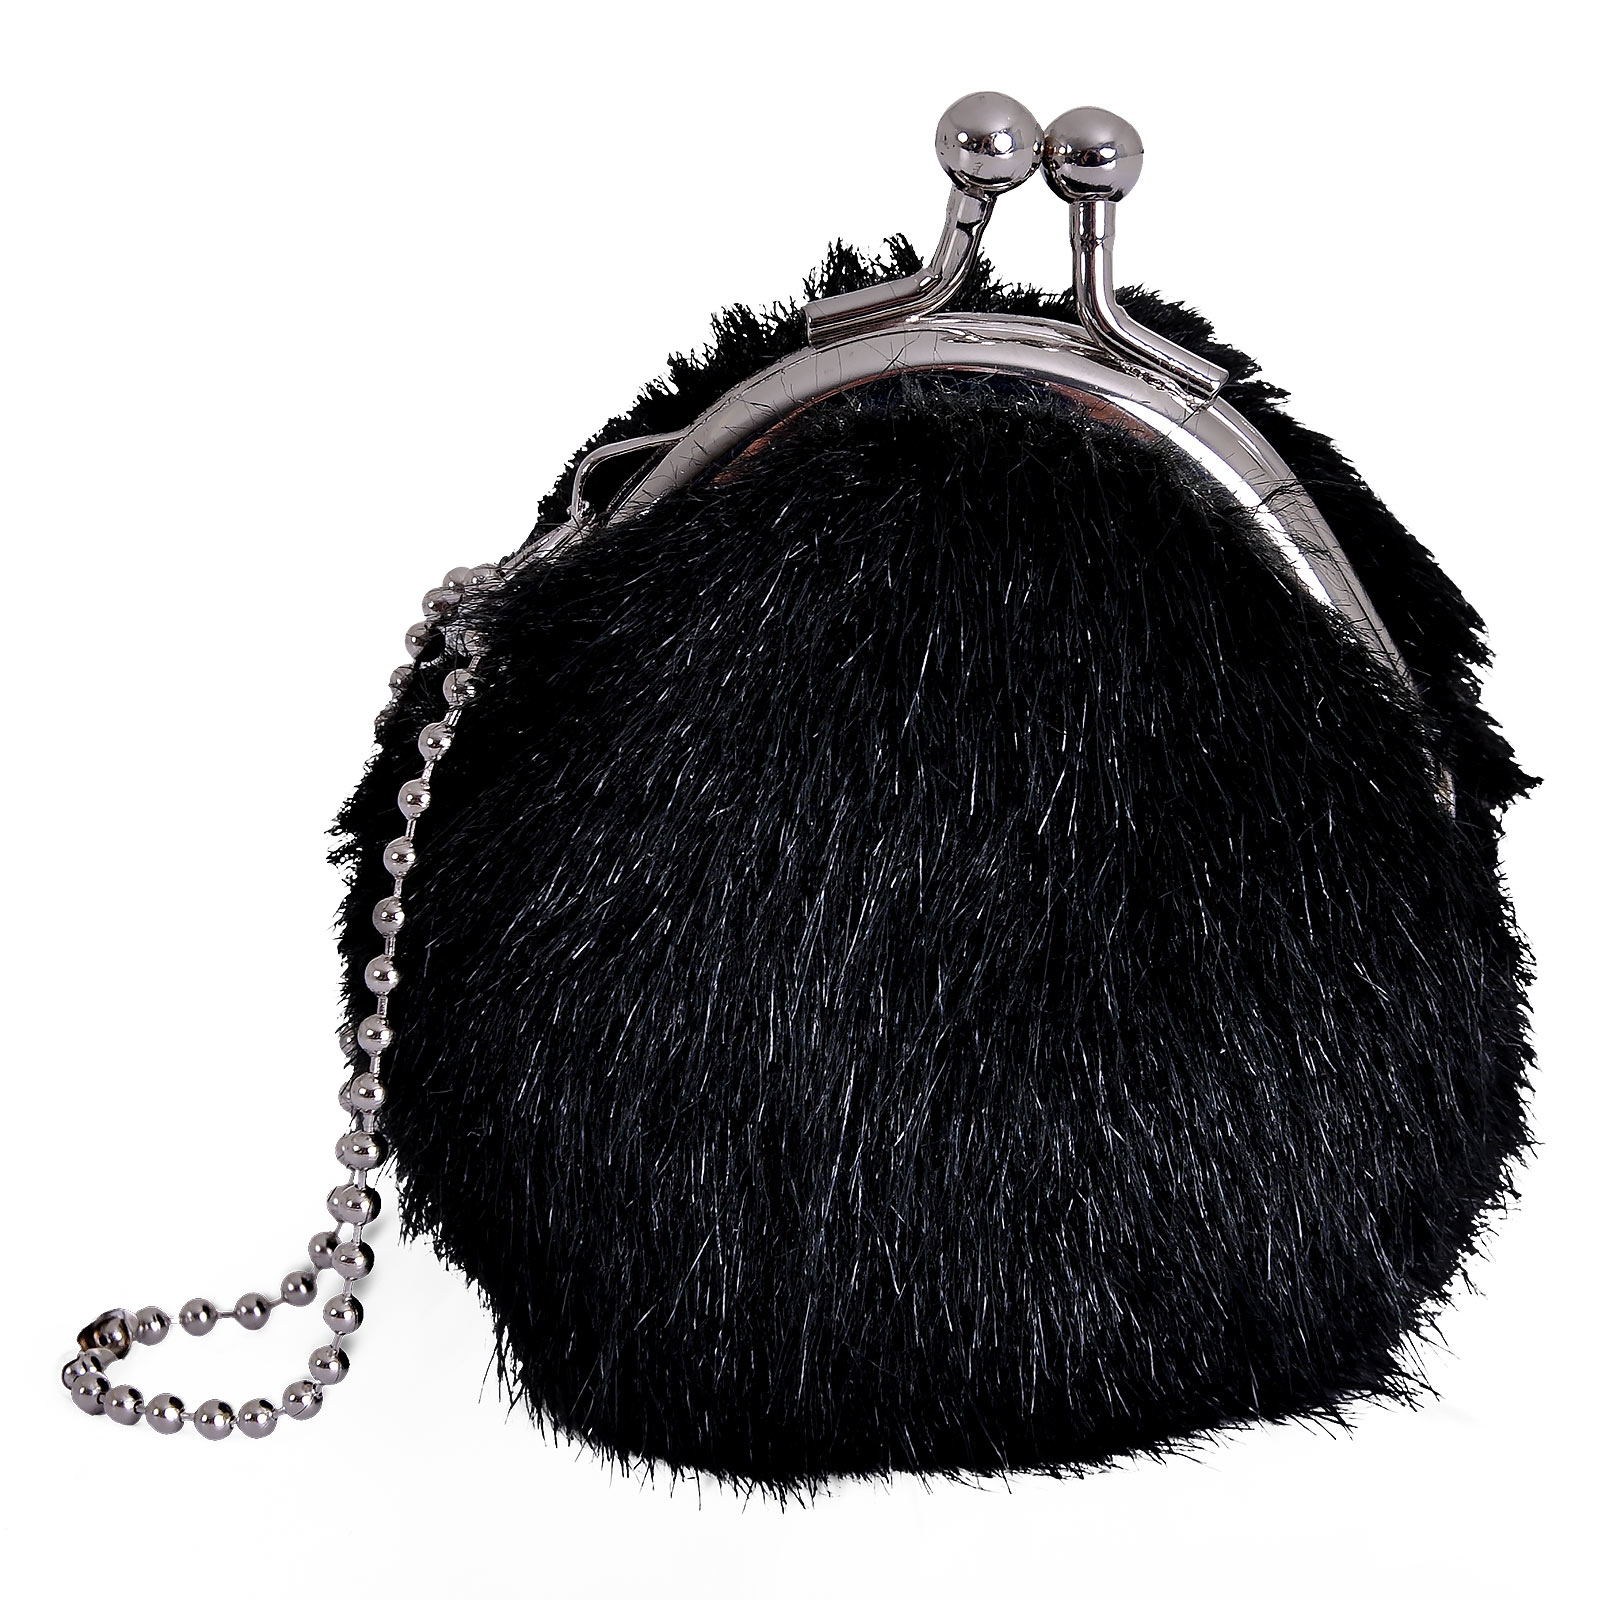 Totoro - Rußmännchen Plüsch Kleingeldbörse